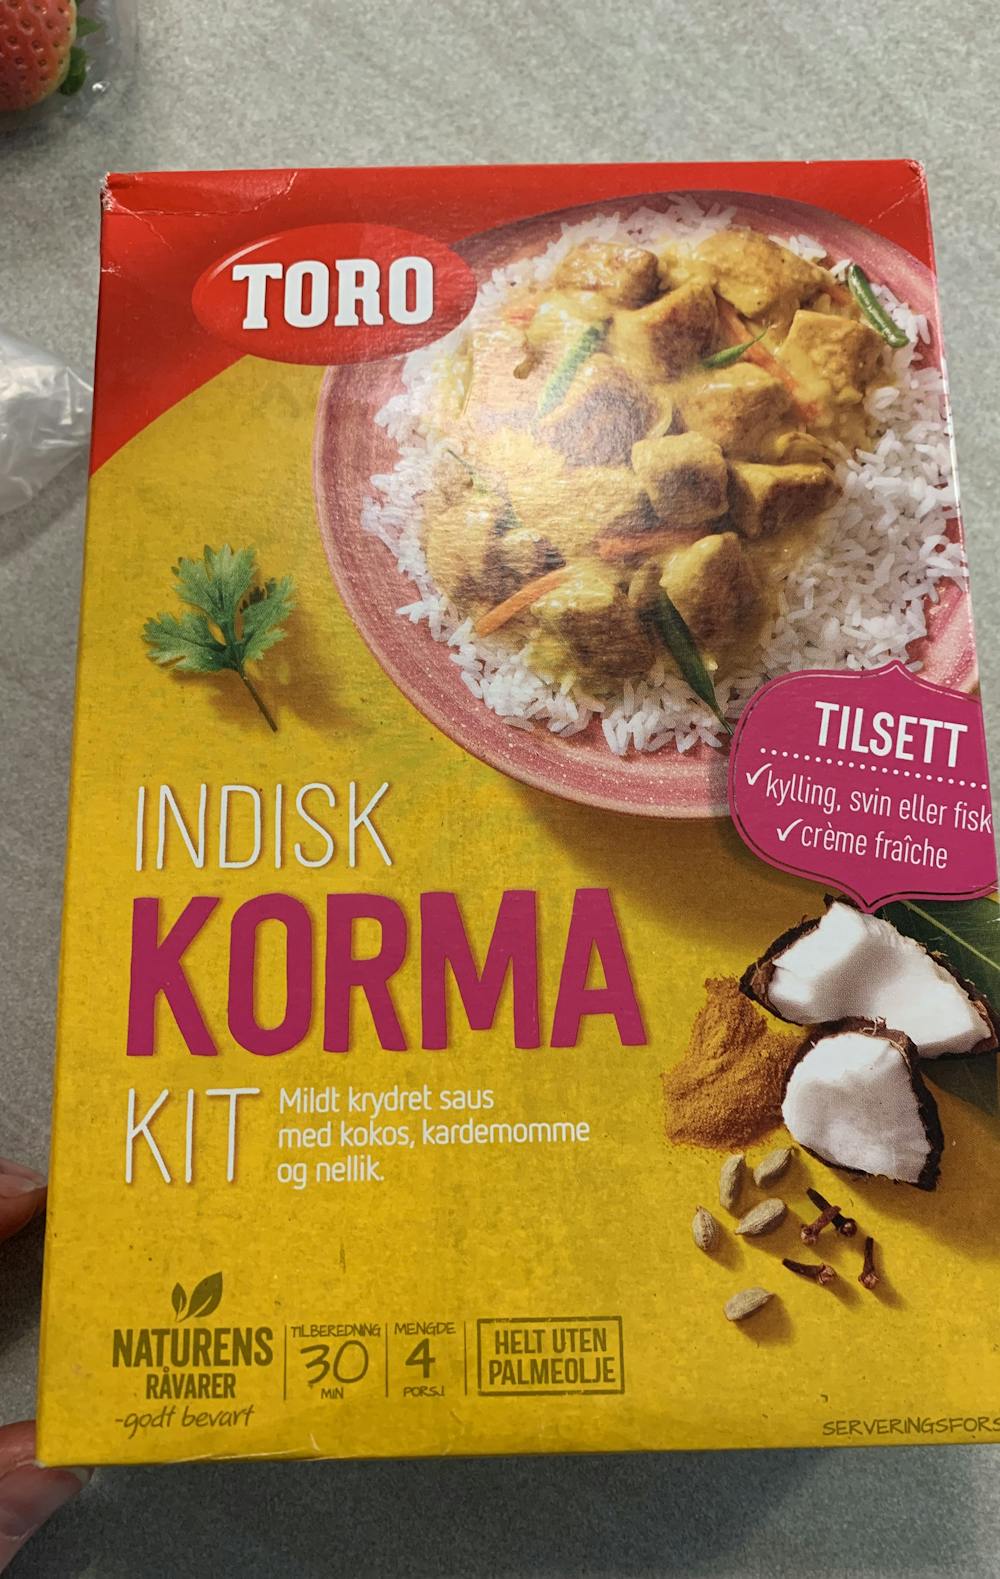 Indisk korma, Toro